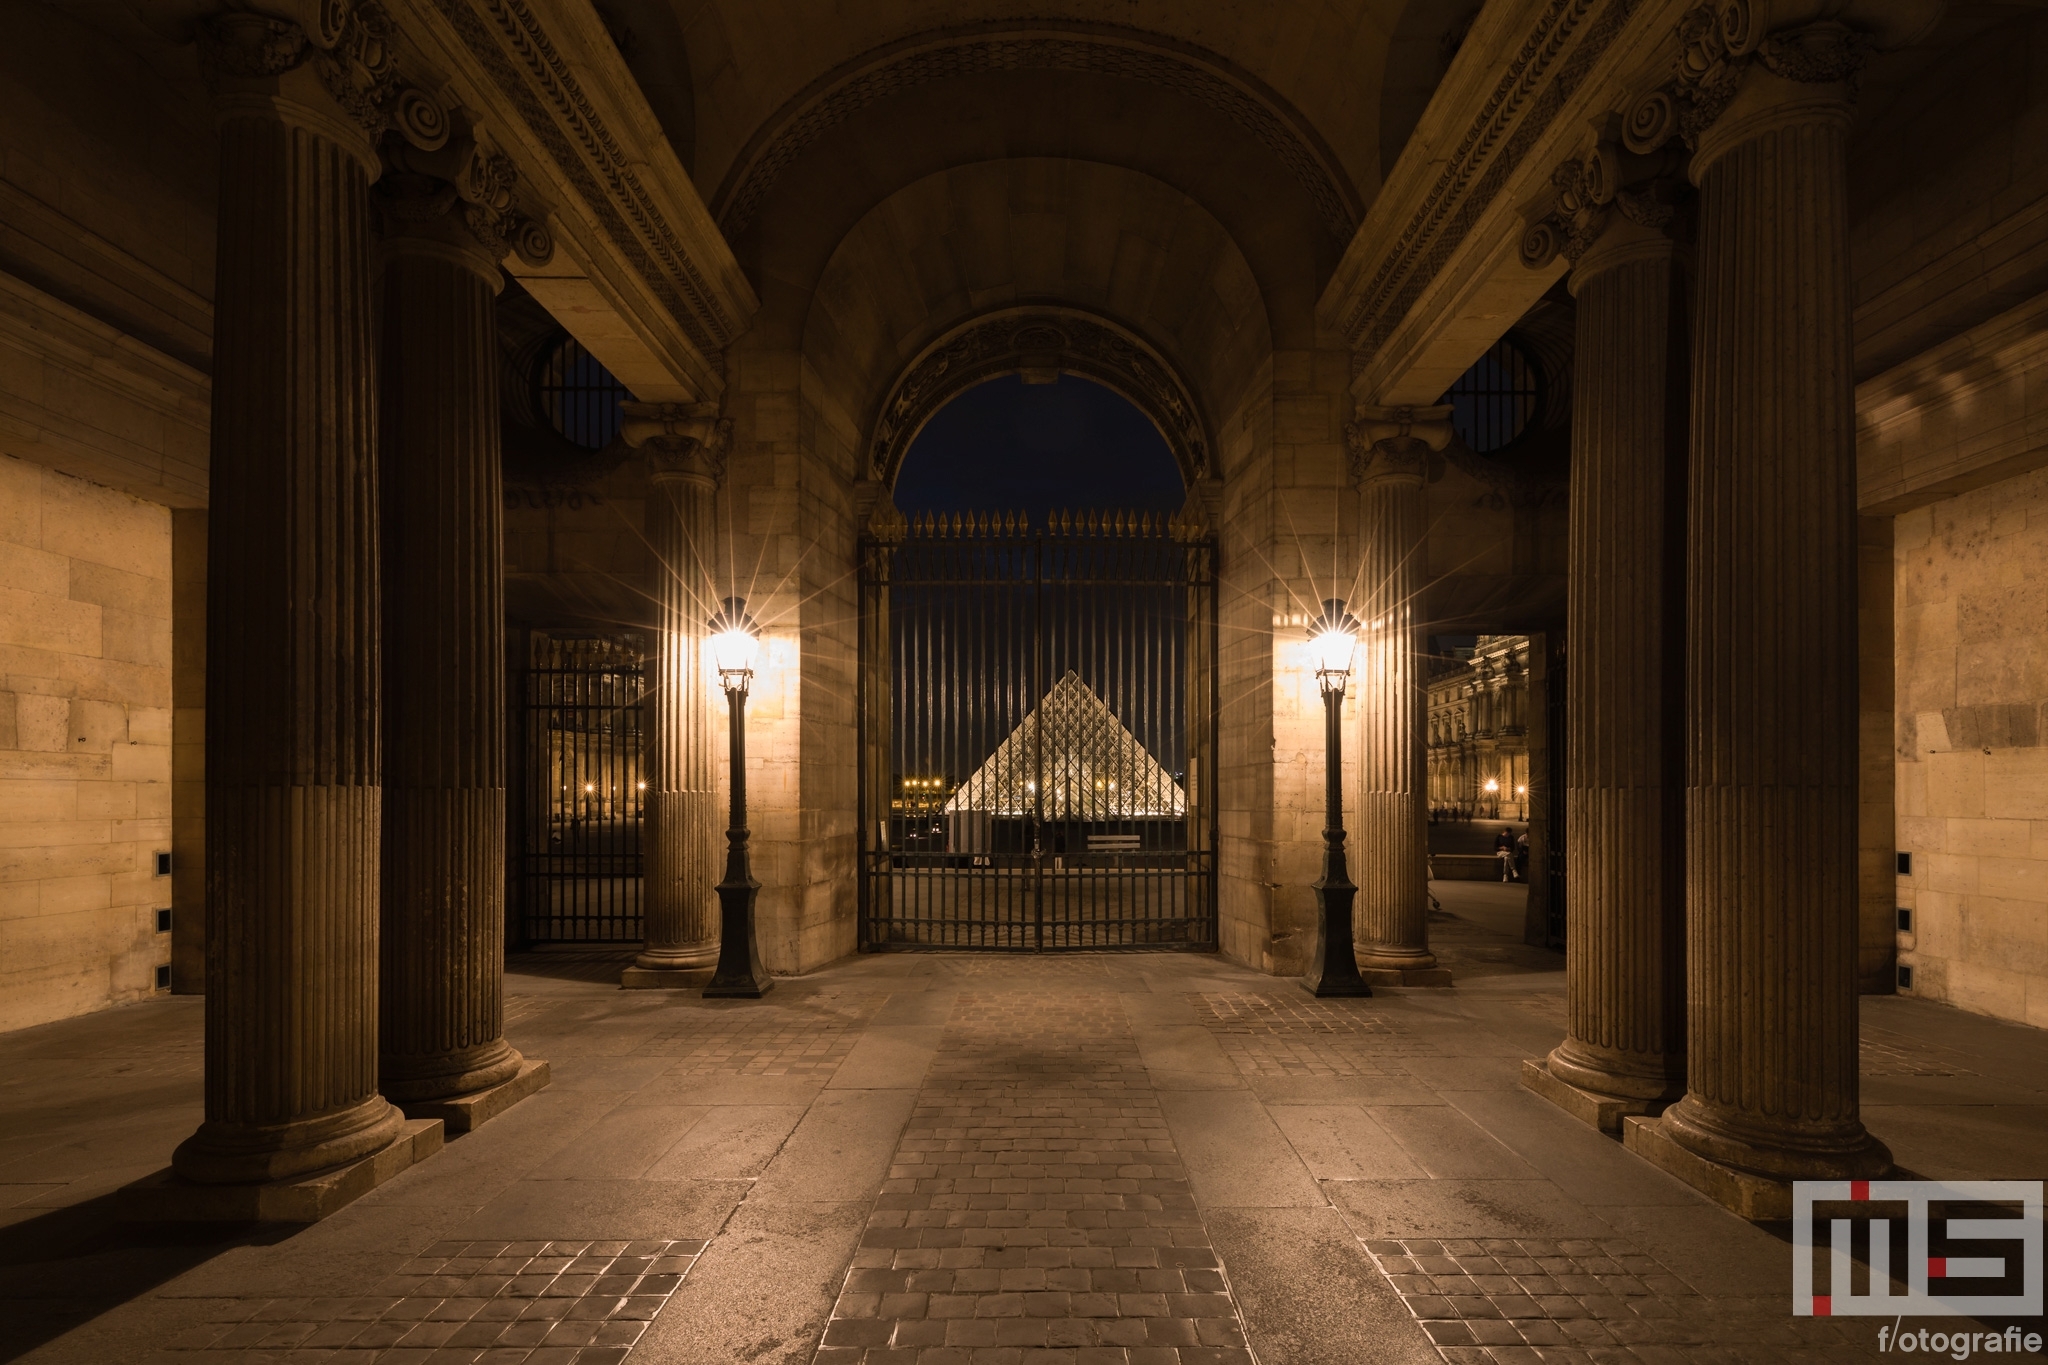 Te Koop | De zuilen en poort van het Louvre Museum in Parijs in nachtelijke uren